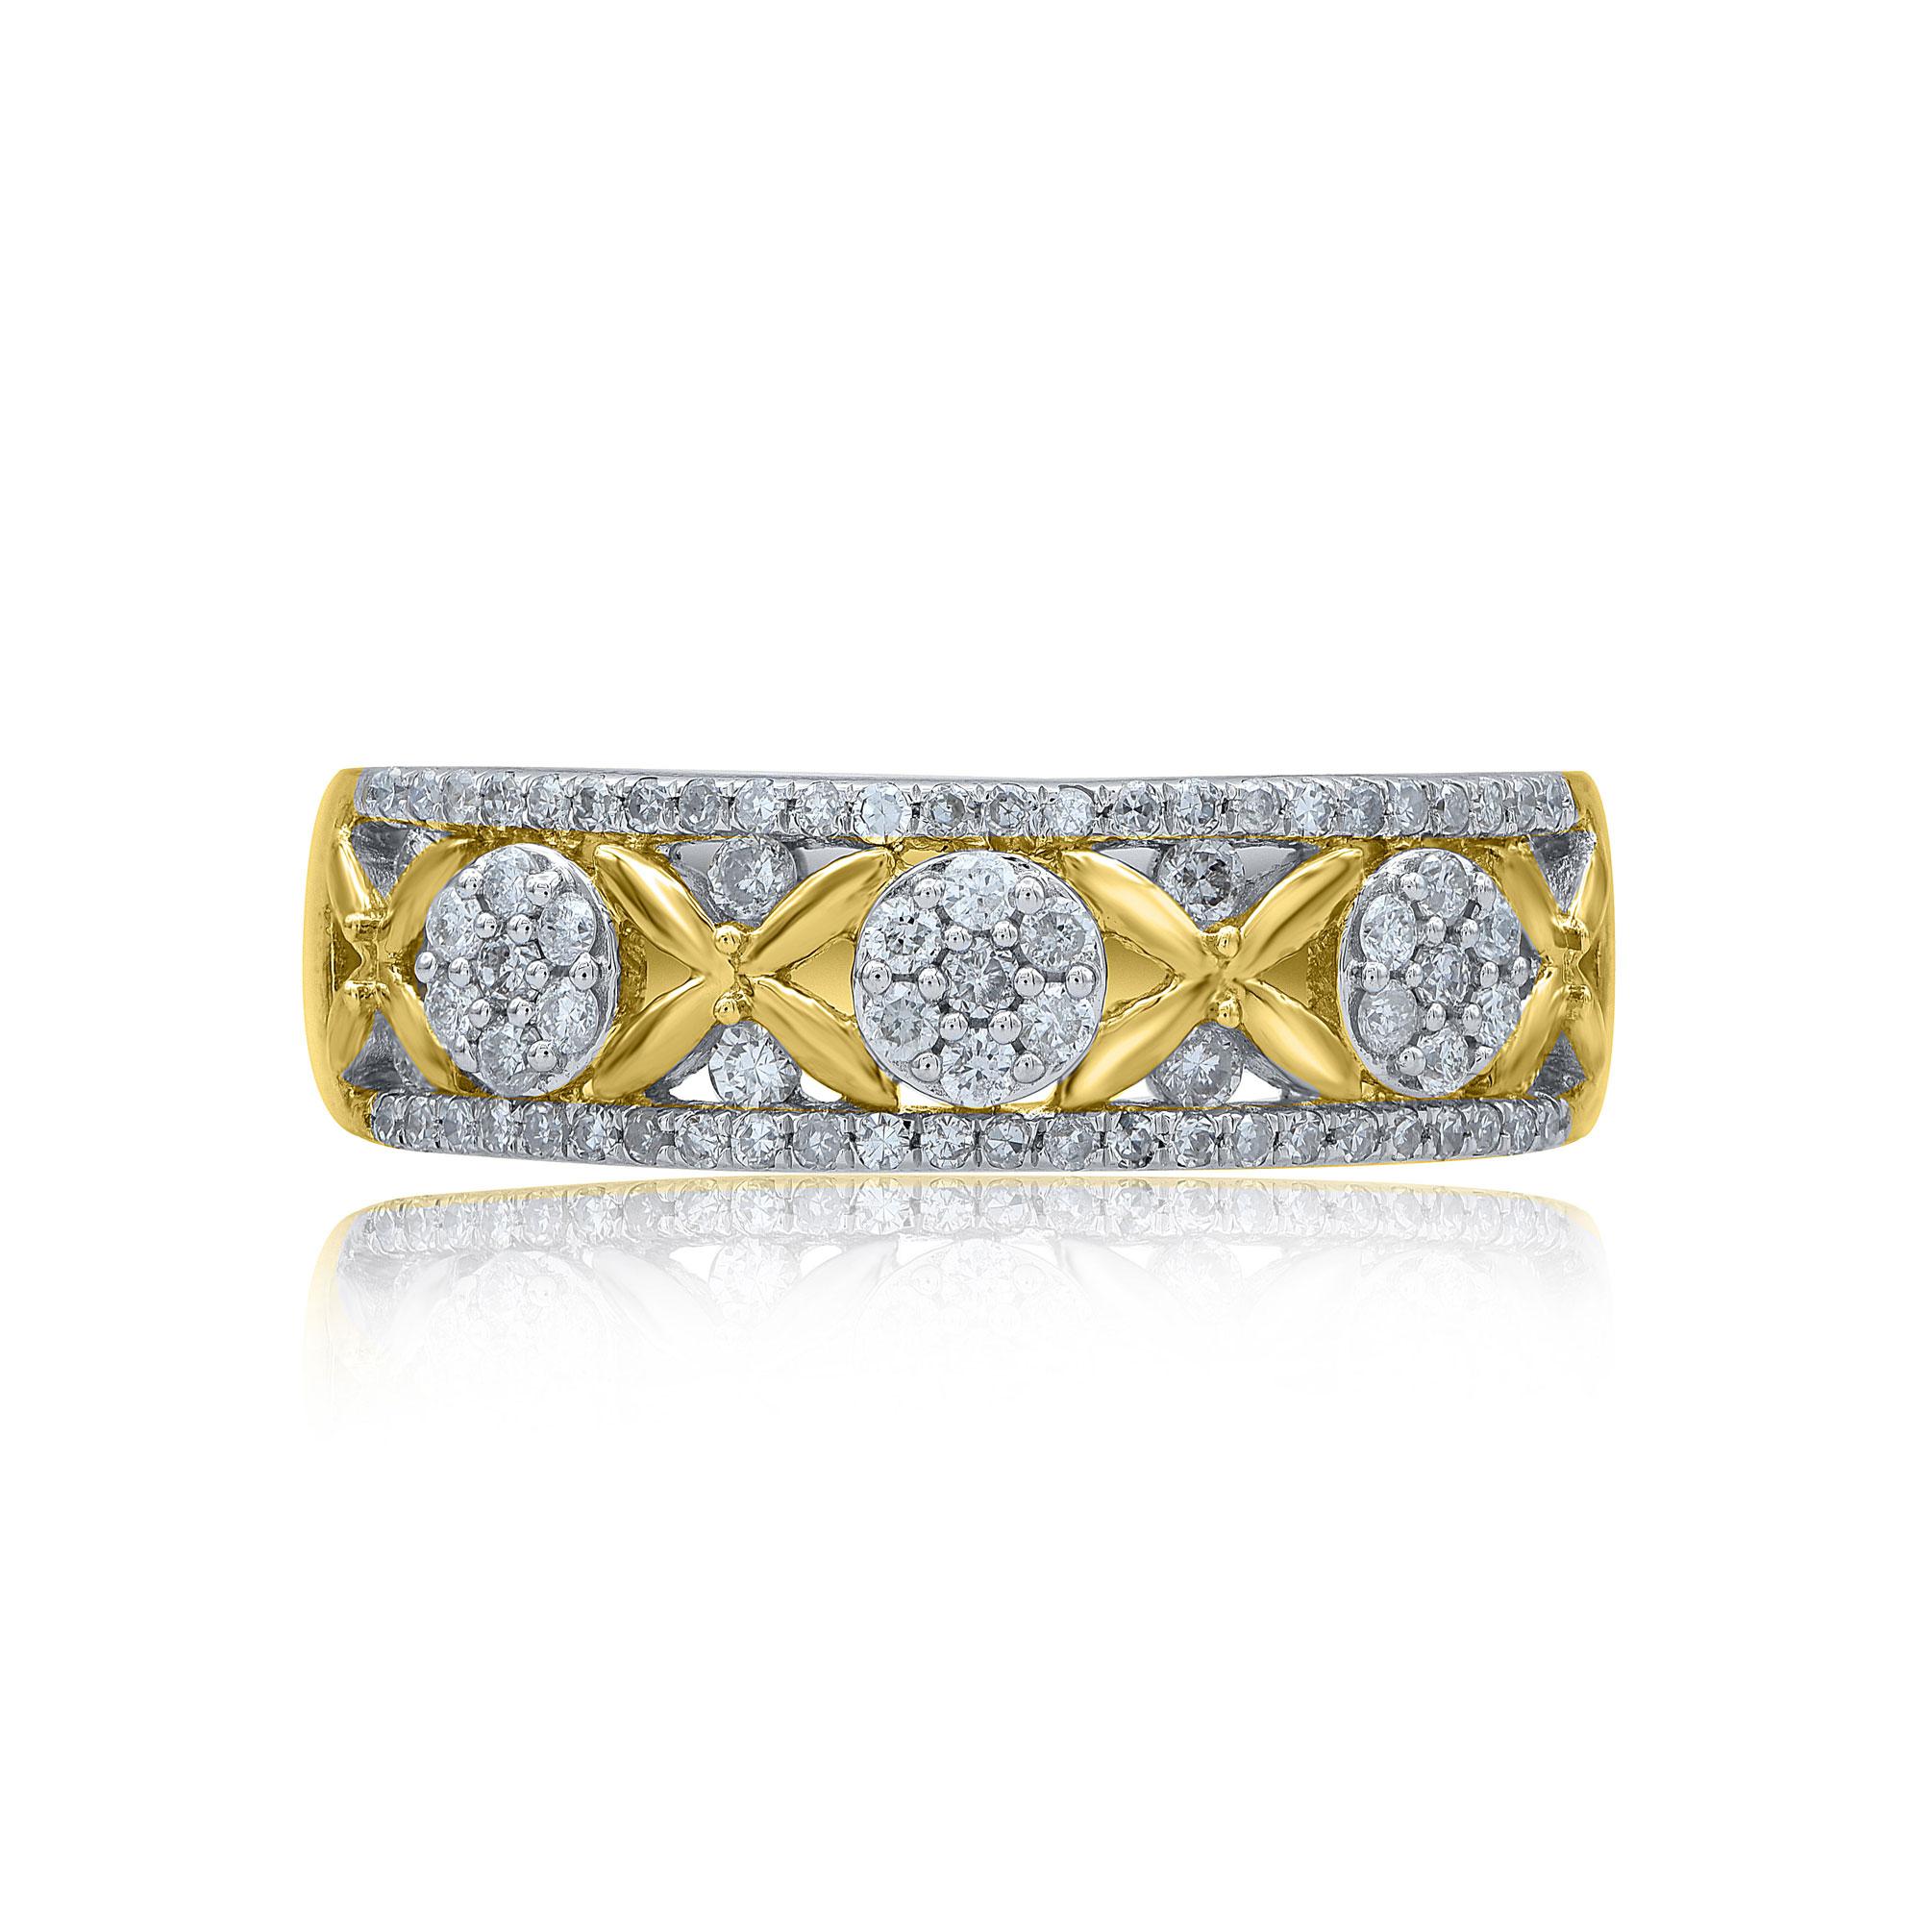 Lassen Sie Ihren schönsten Tag mit diesem Ehering erstrahlen. Diese Bandringe sind mit 77 natürlichen Diamanten im Brillant- und Einzelschliff in 14 Karat Gelbgold in Zacken-, Pflaster- und Halbkanalfassung besetzt. Die weißen Diamanten sind mit der